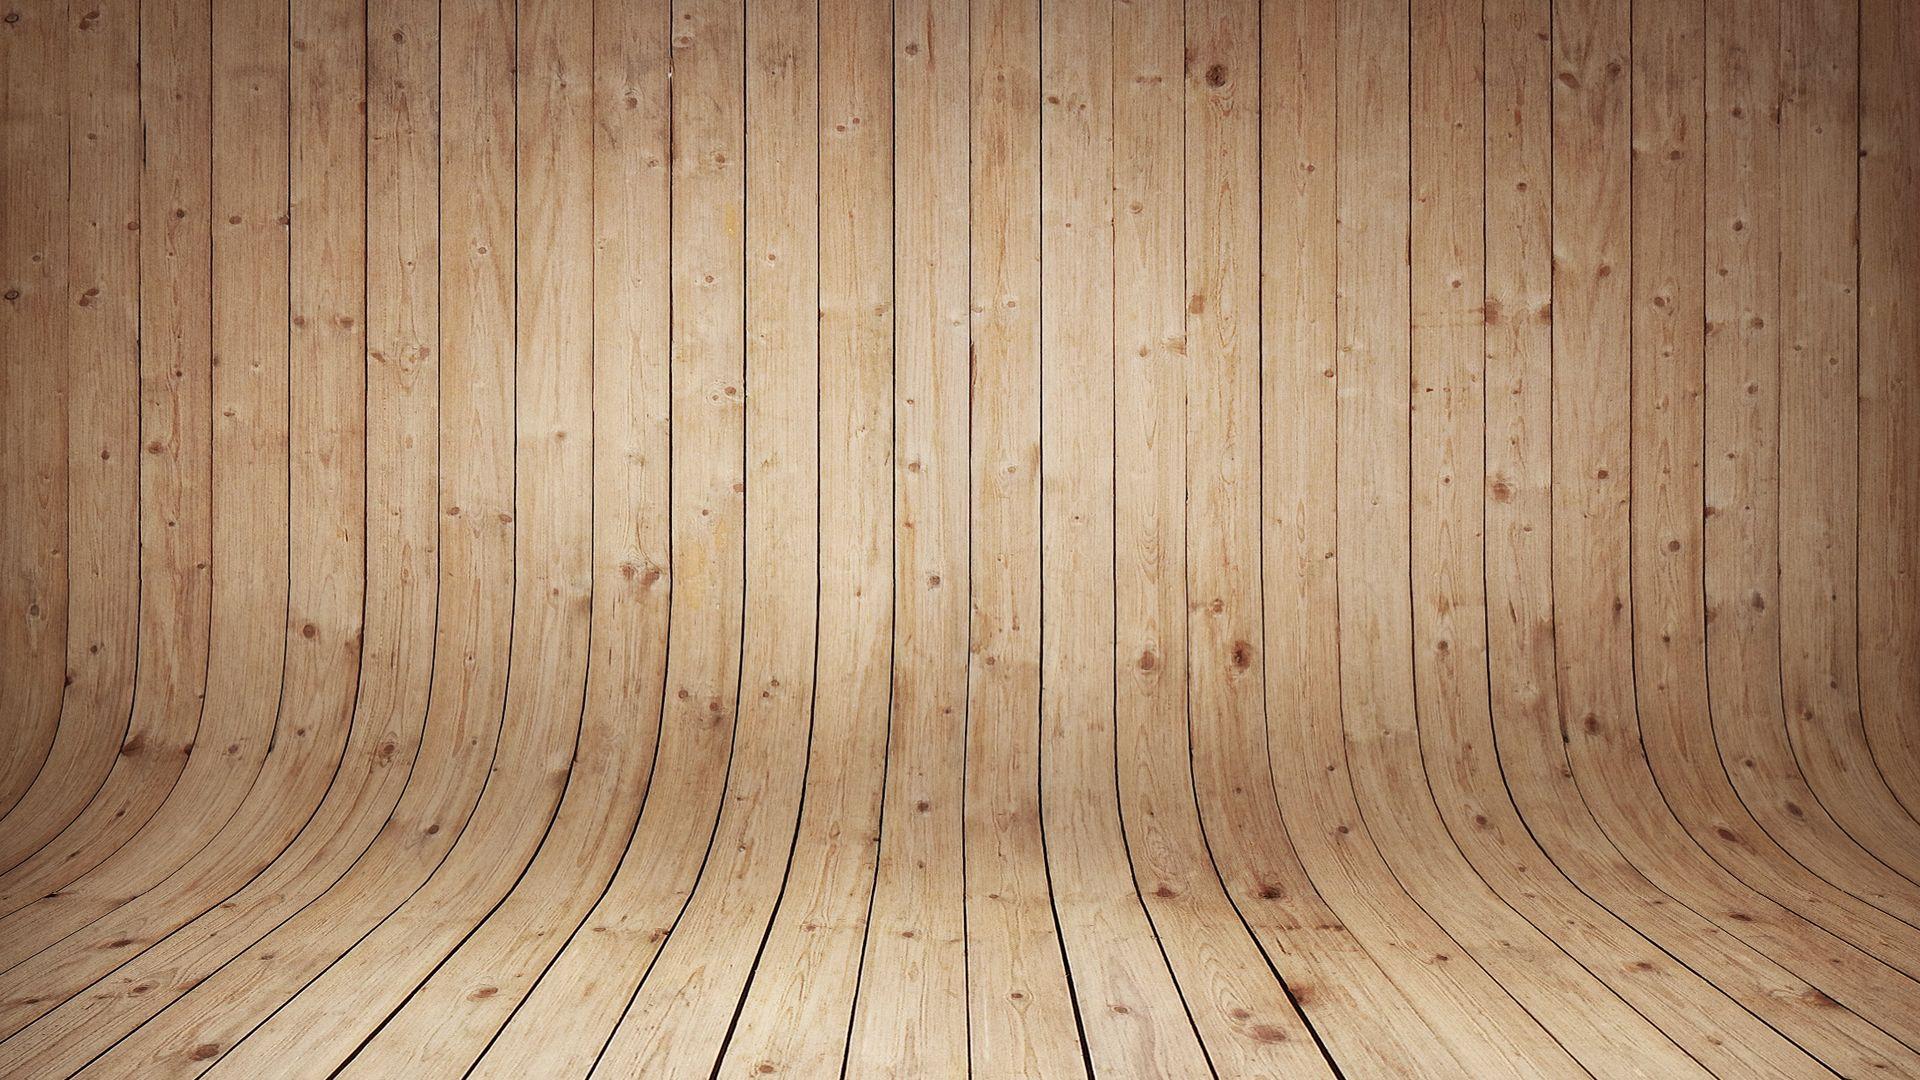 Khám phá bộ sưu tập hình nền máy tính với chủ đề gỗ Desktop Wood đầy ấn tượng. Hình nền độc đáo với những tông màu ấm áp và đa dạng chủ đề về gỗ sẽ mang đến cho bạn một không gian làm việc đầy phong cách và tinh tế.